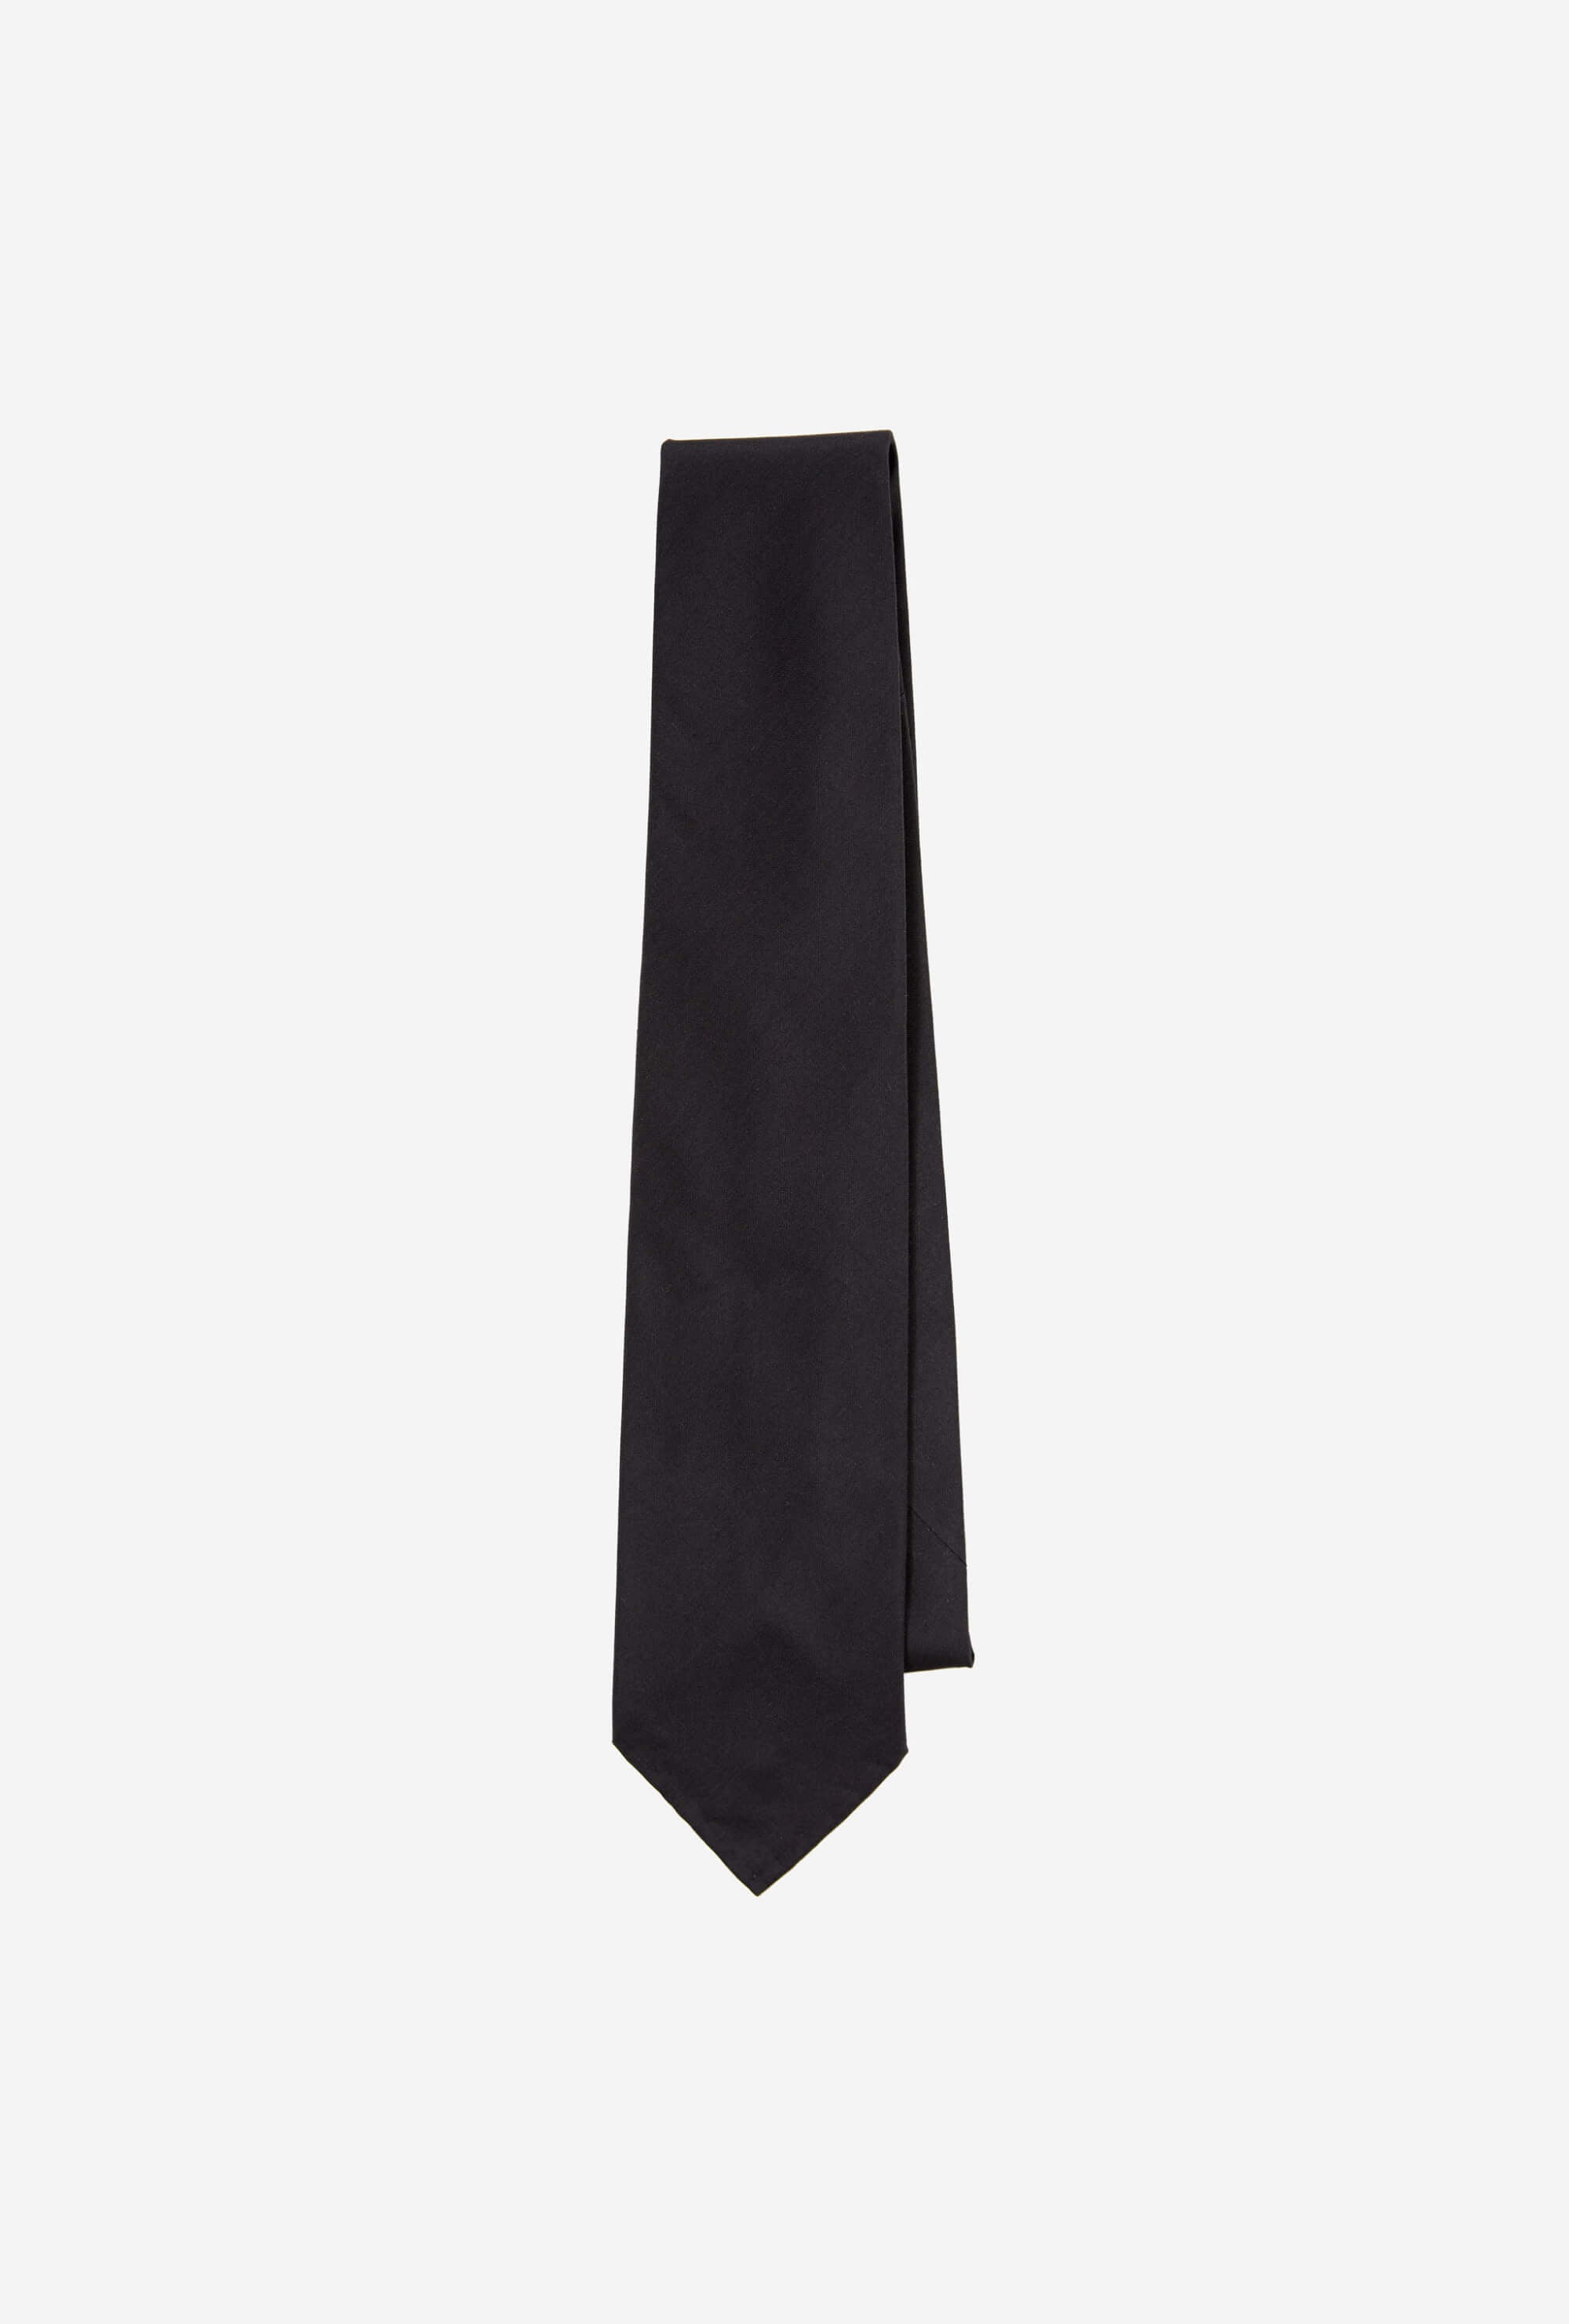 Dry Silk Tie Black